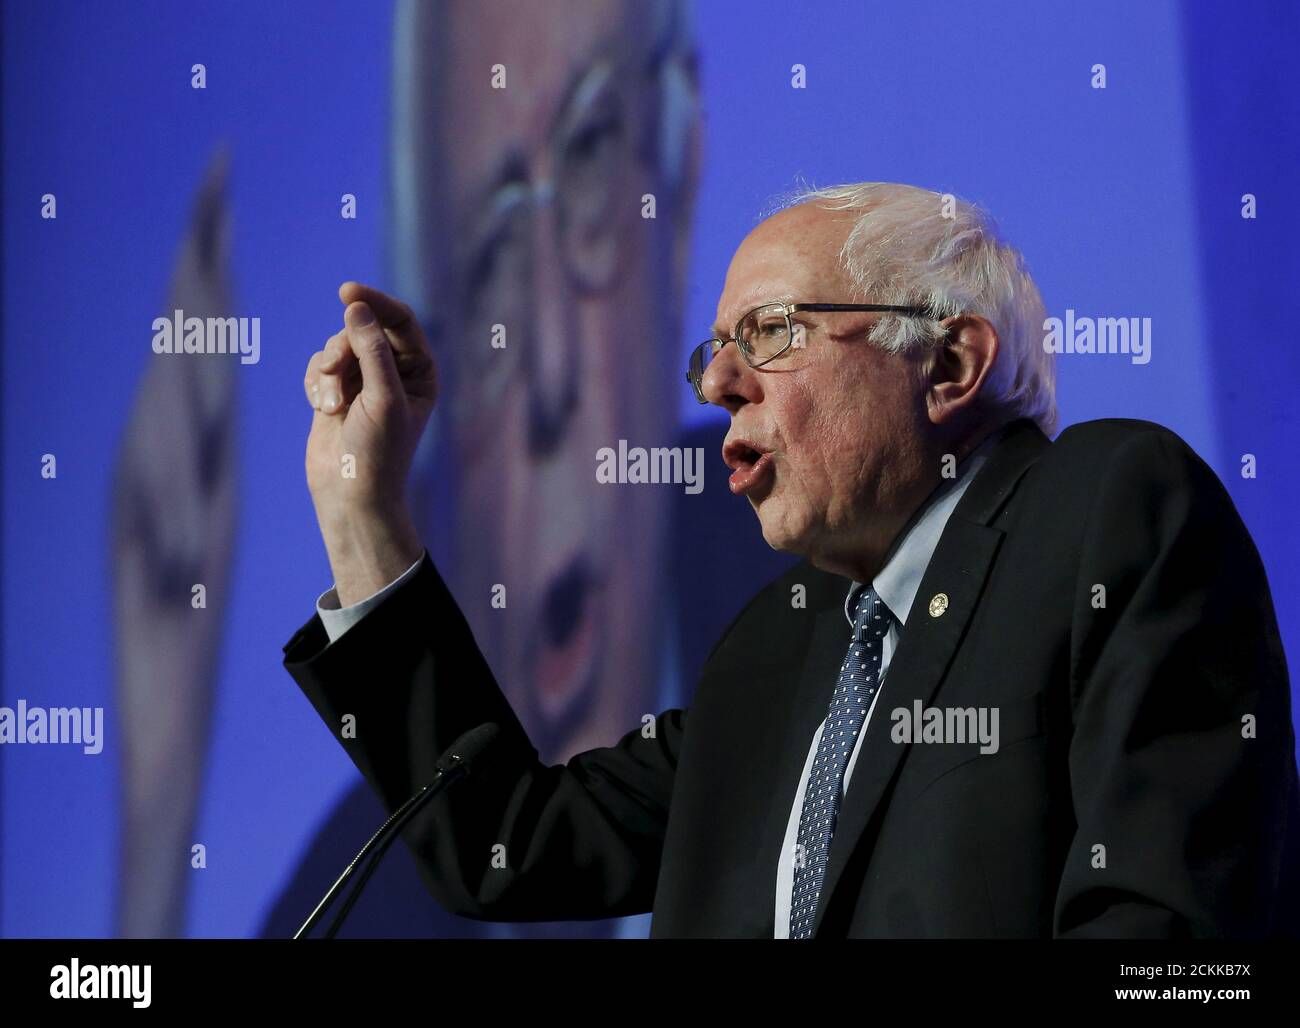 Bernie Sanders, candidat démocrate aux États-Unis, s'exprime au dîner Humphrey-Mondale à Minneapolis, aux États-Unis, le 12 février 2016. REUTERS/Jim Young Banque D'Images